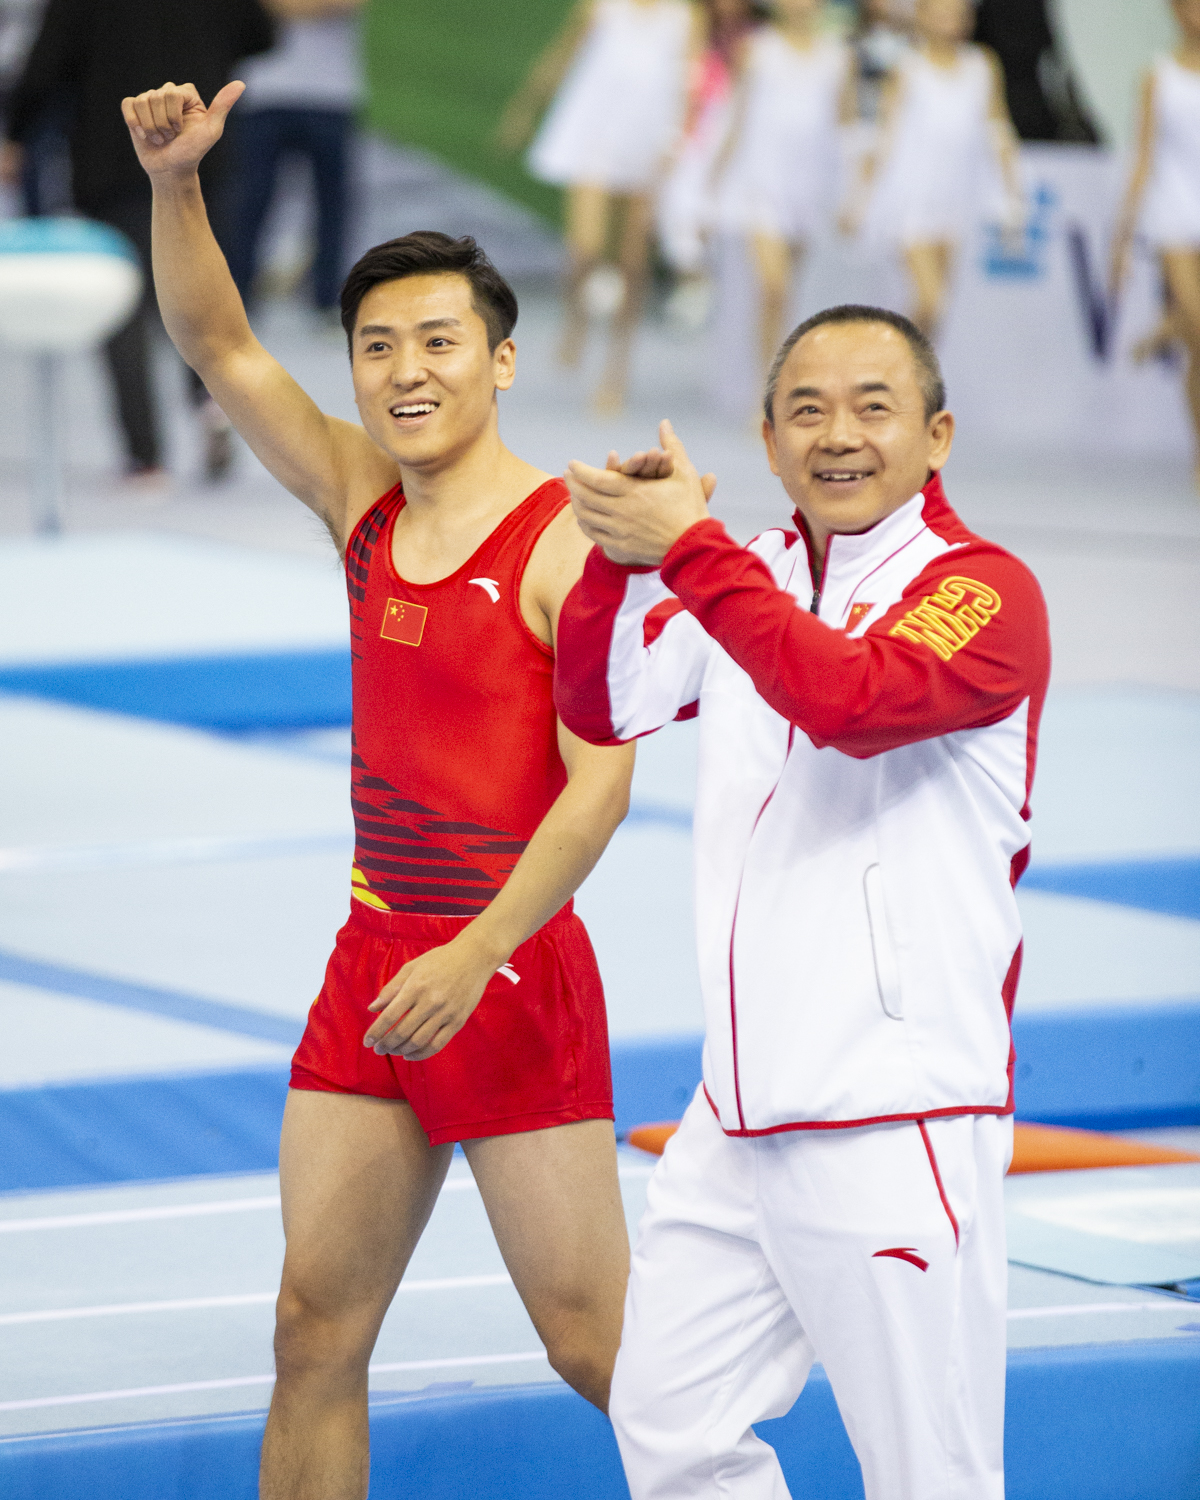 Photographie couleur du chinois Dong Dong, champion olympique de Trampoline, et de son entraineur qui semblent heureux face au public